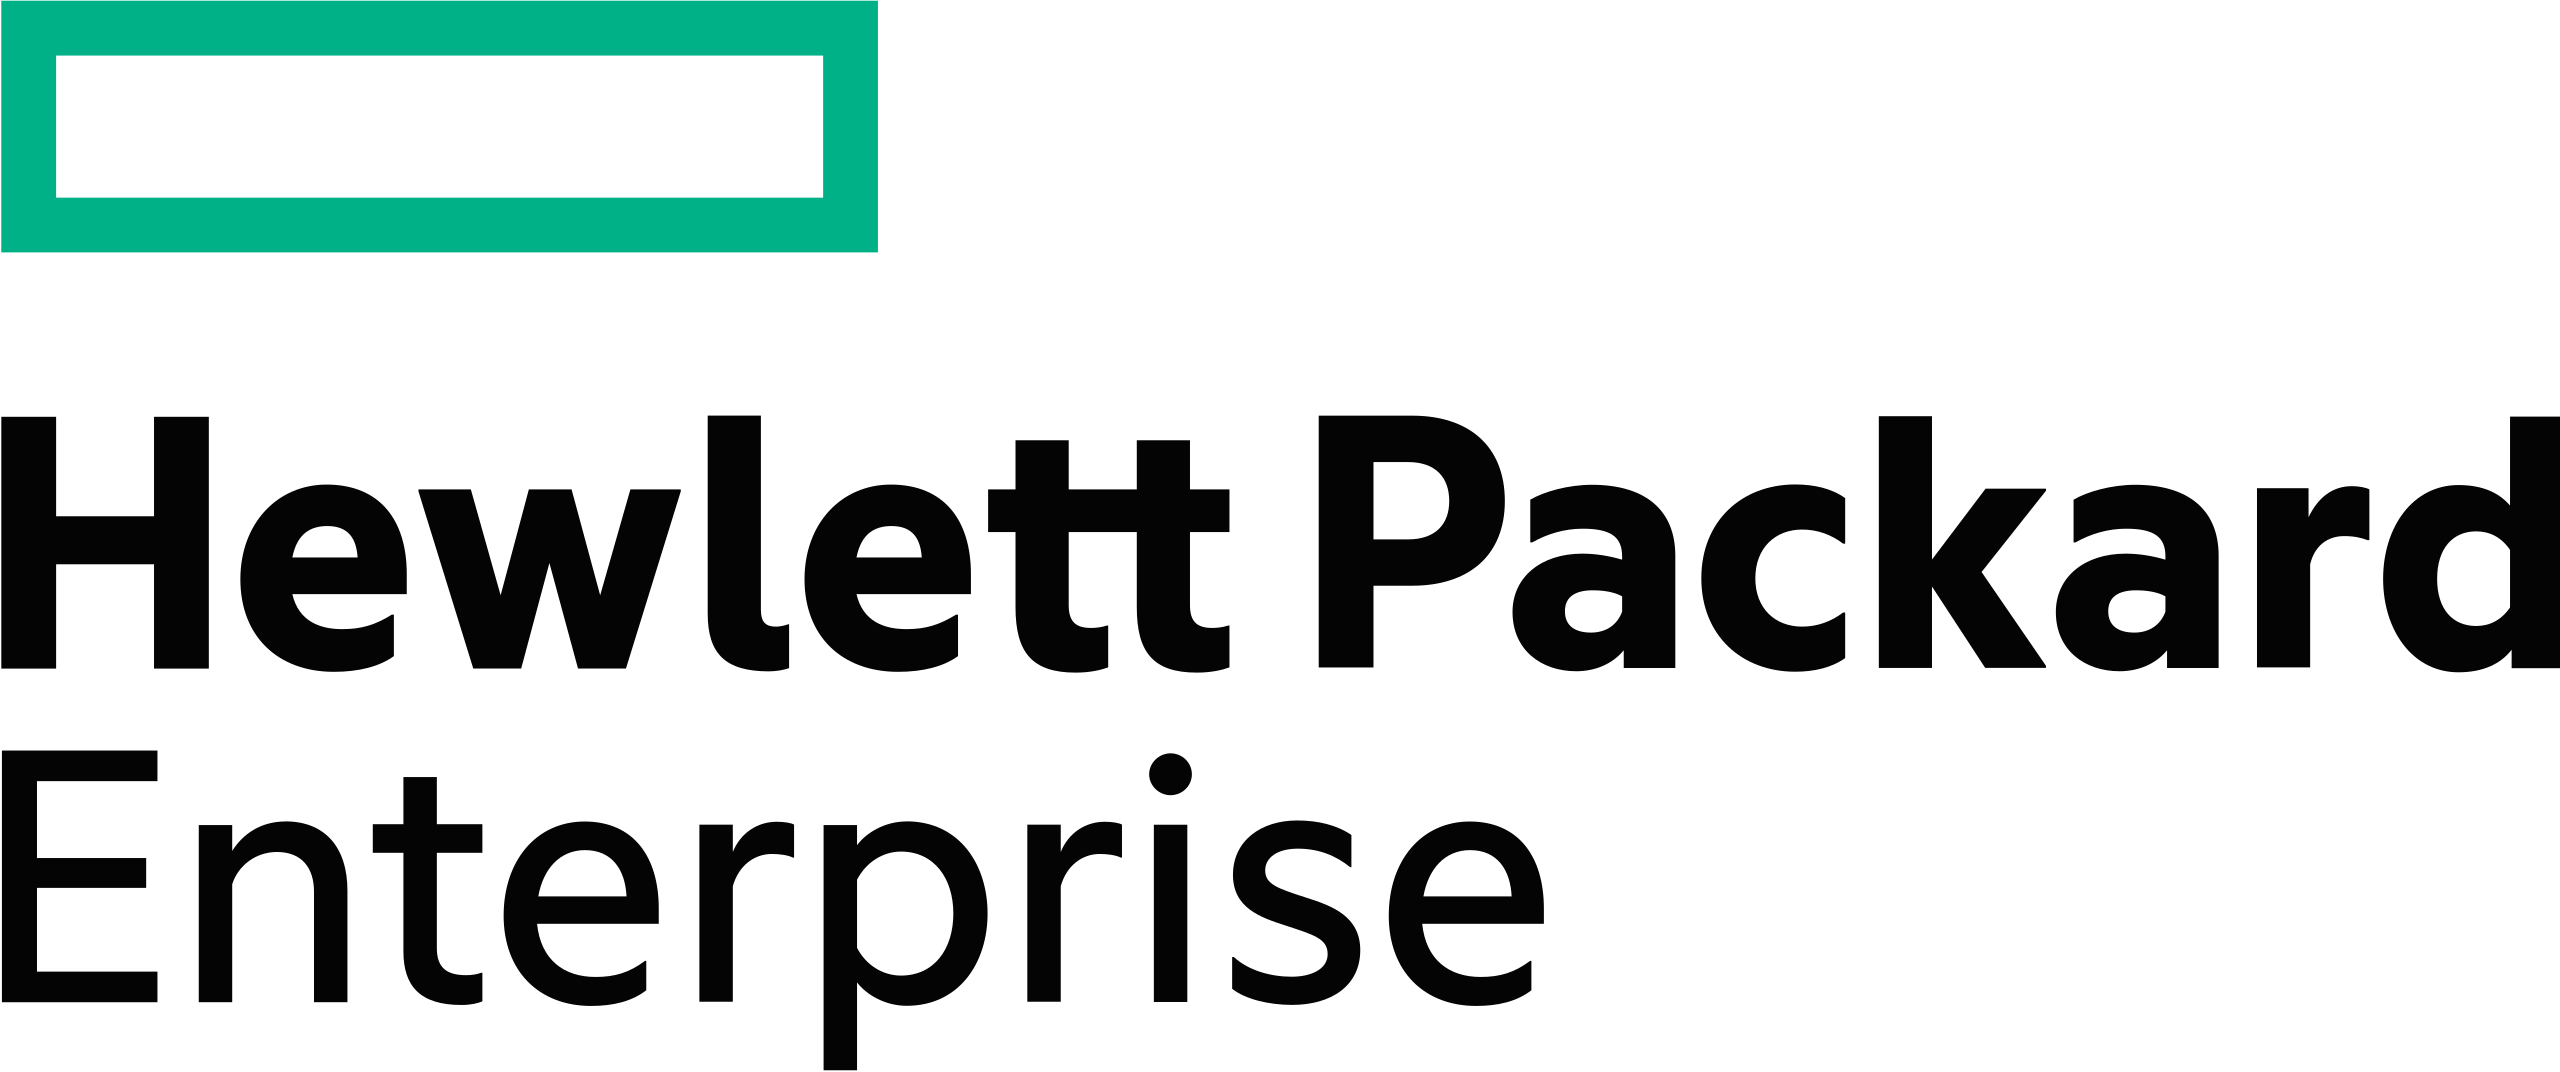 Hewllet Packard Enterprise